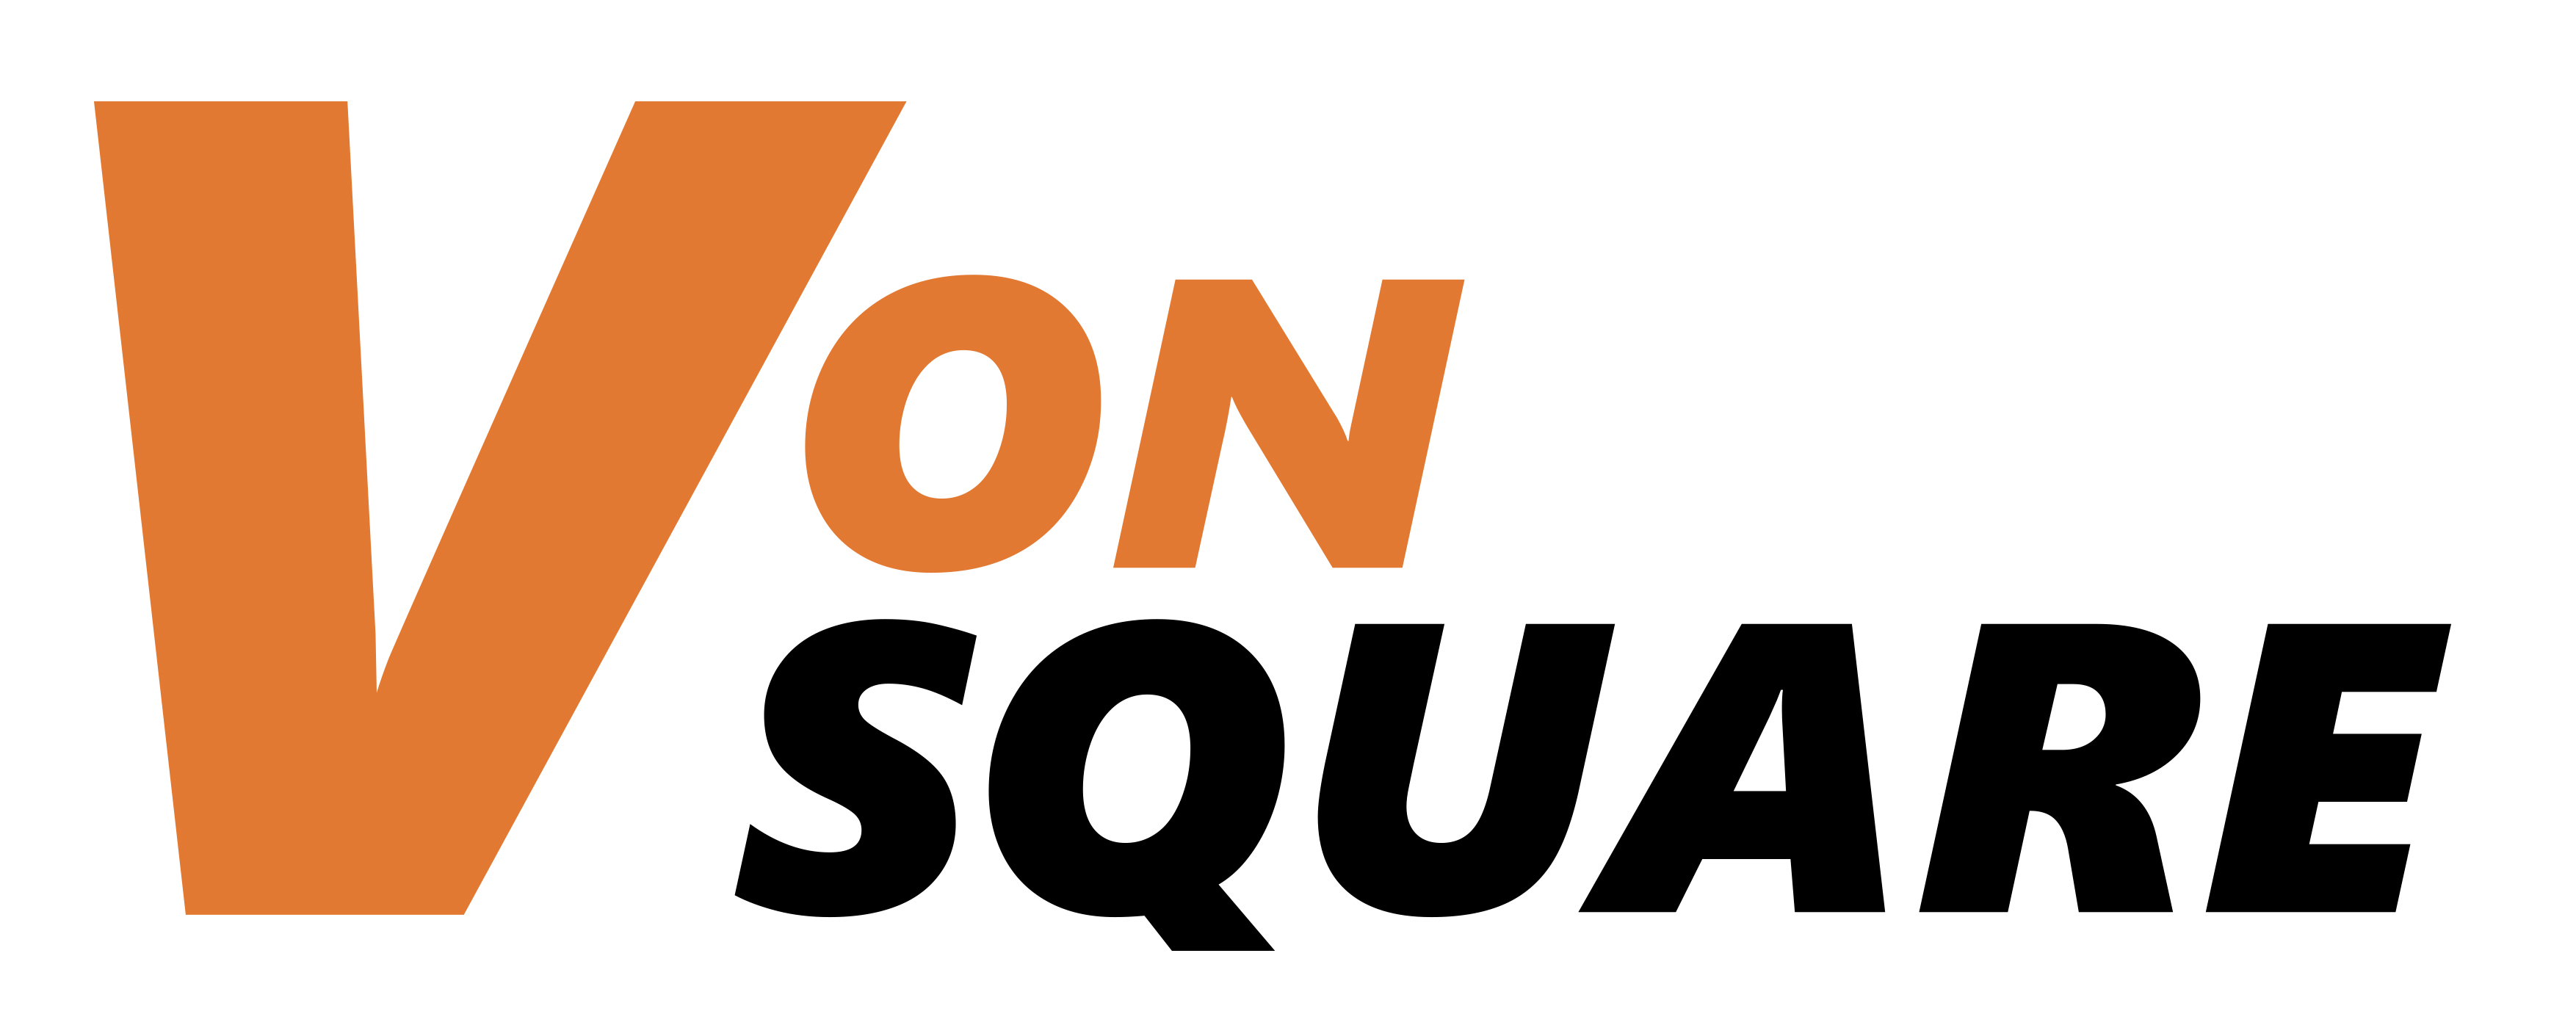 VON logo jpg1.jpg